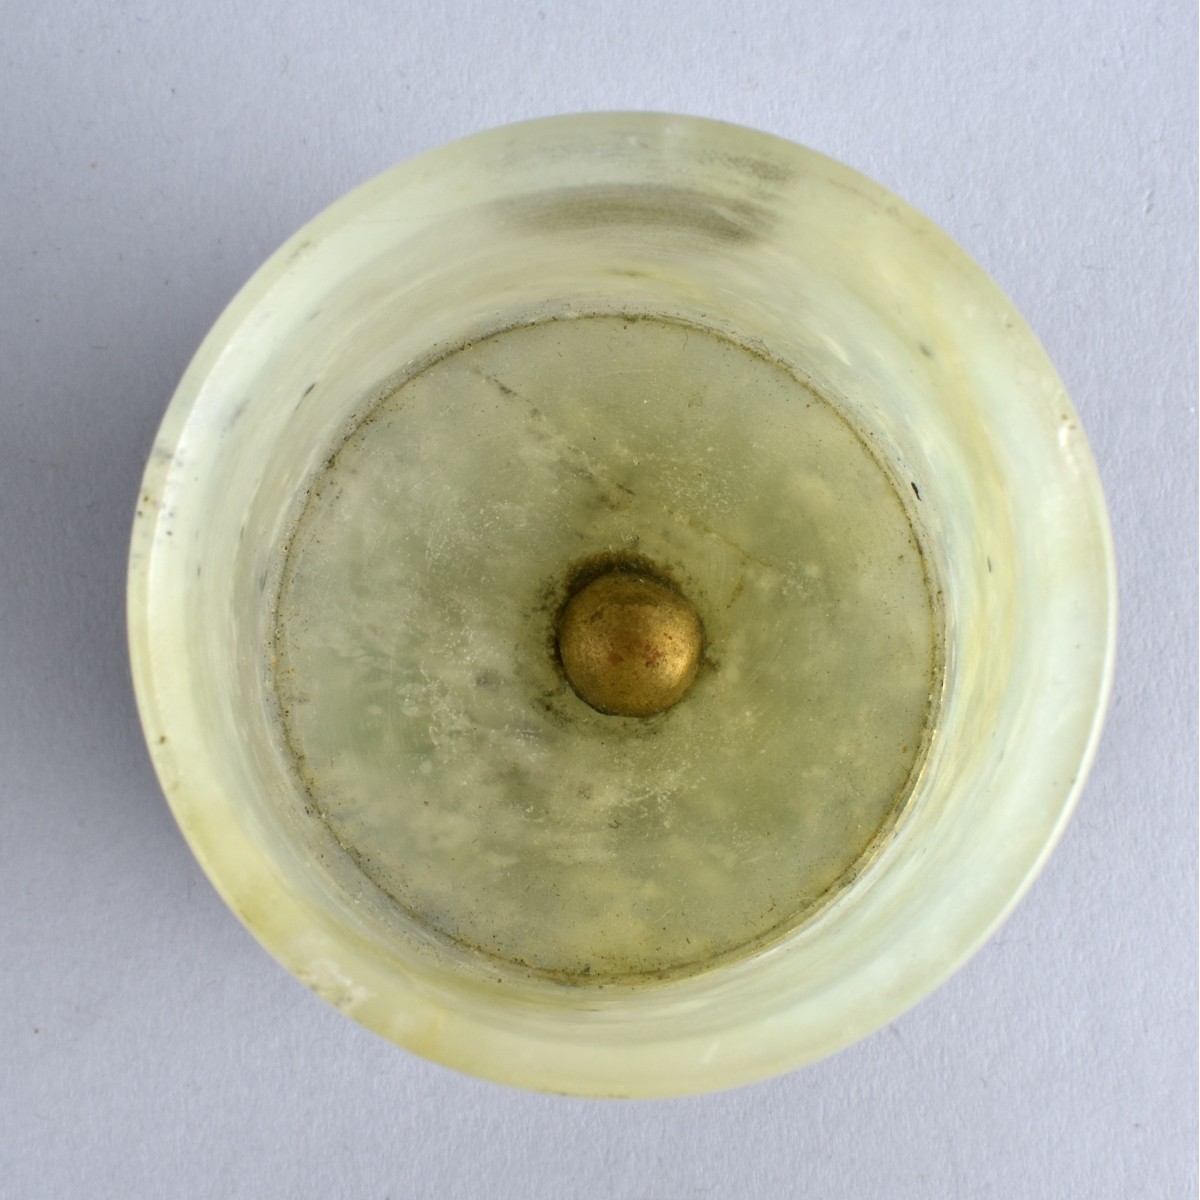 Chinese Jade/Silver Enamel Vase